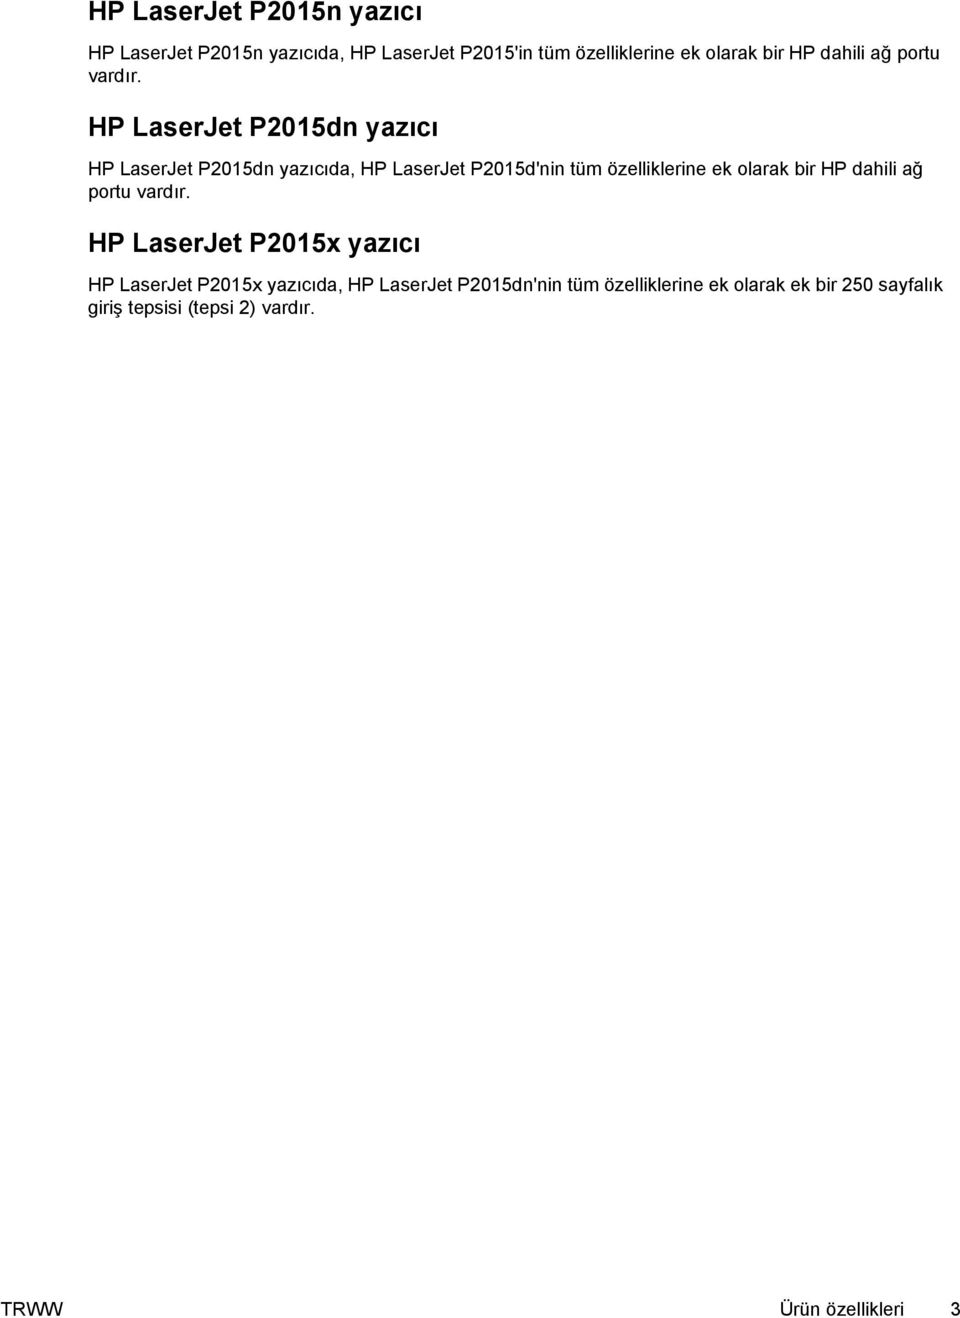 HP LaserJet P2015dn yazıcı HP LaserJet P2015dn yazıcıda, HP LaserJet P2015d'nin tüm özelliklerine ek olarak bir